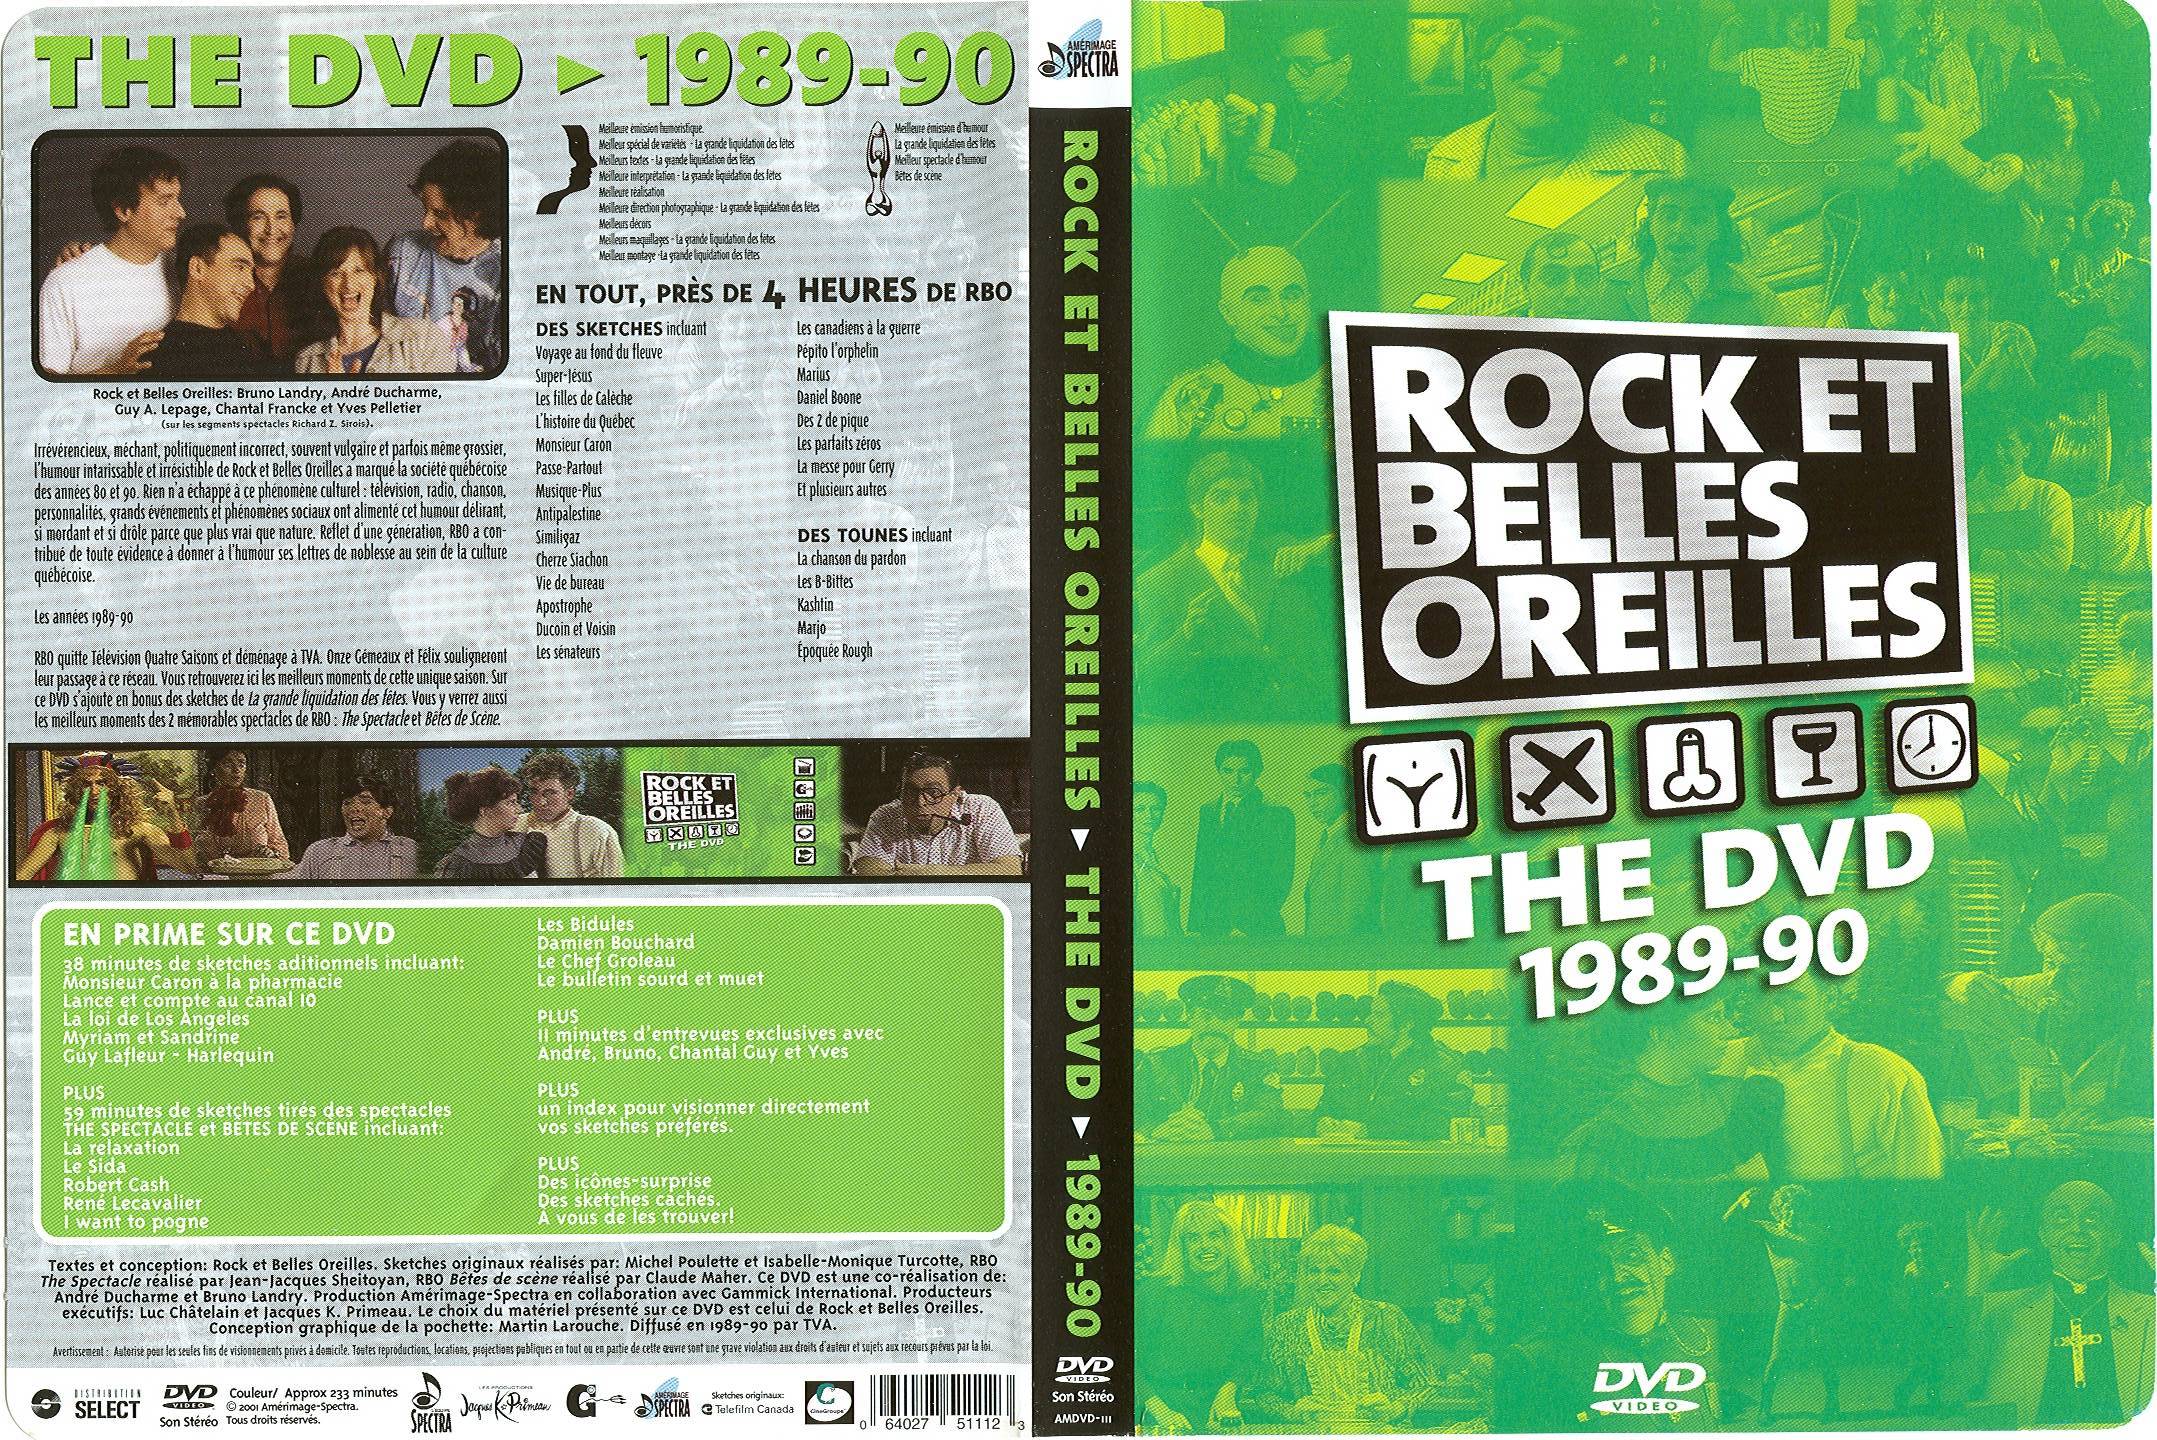 Jaquette DVD Rock et belles oreilles 1989-90